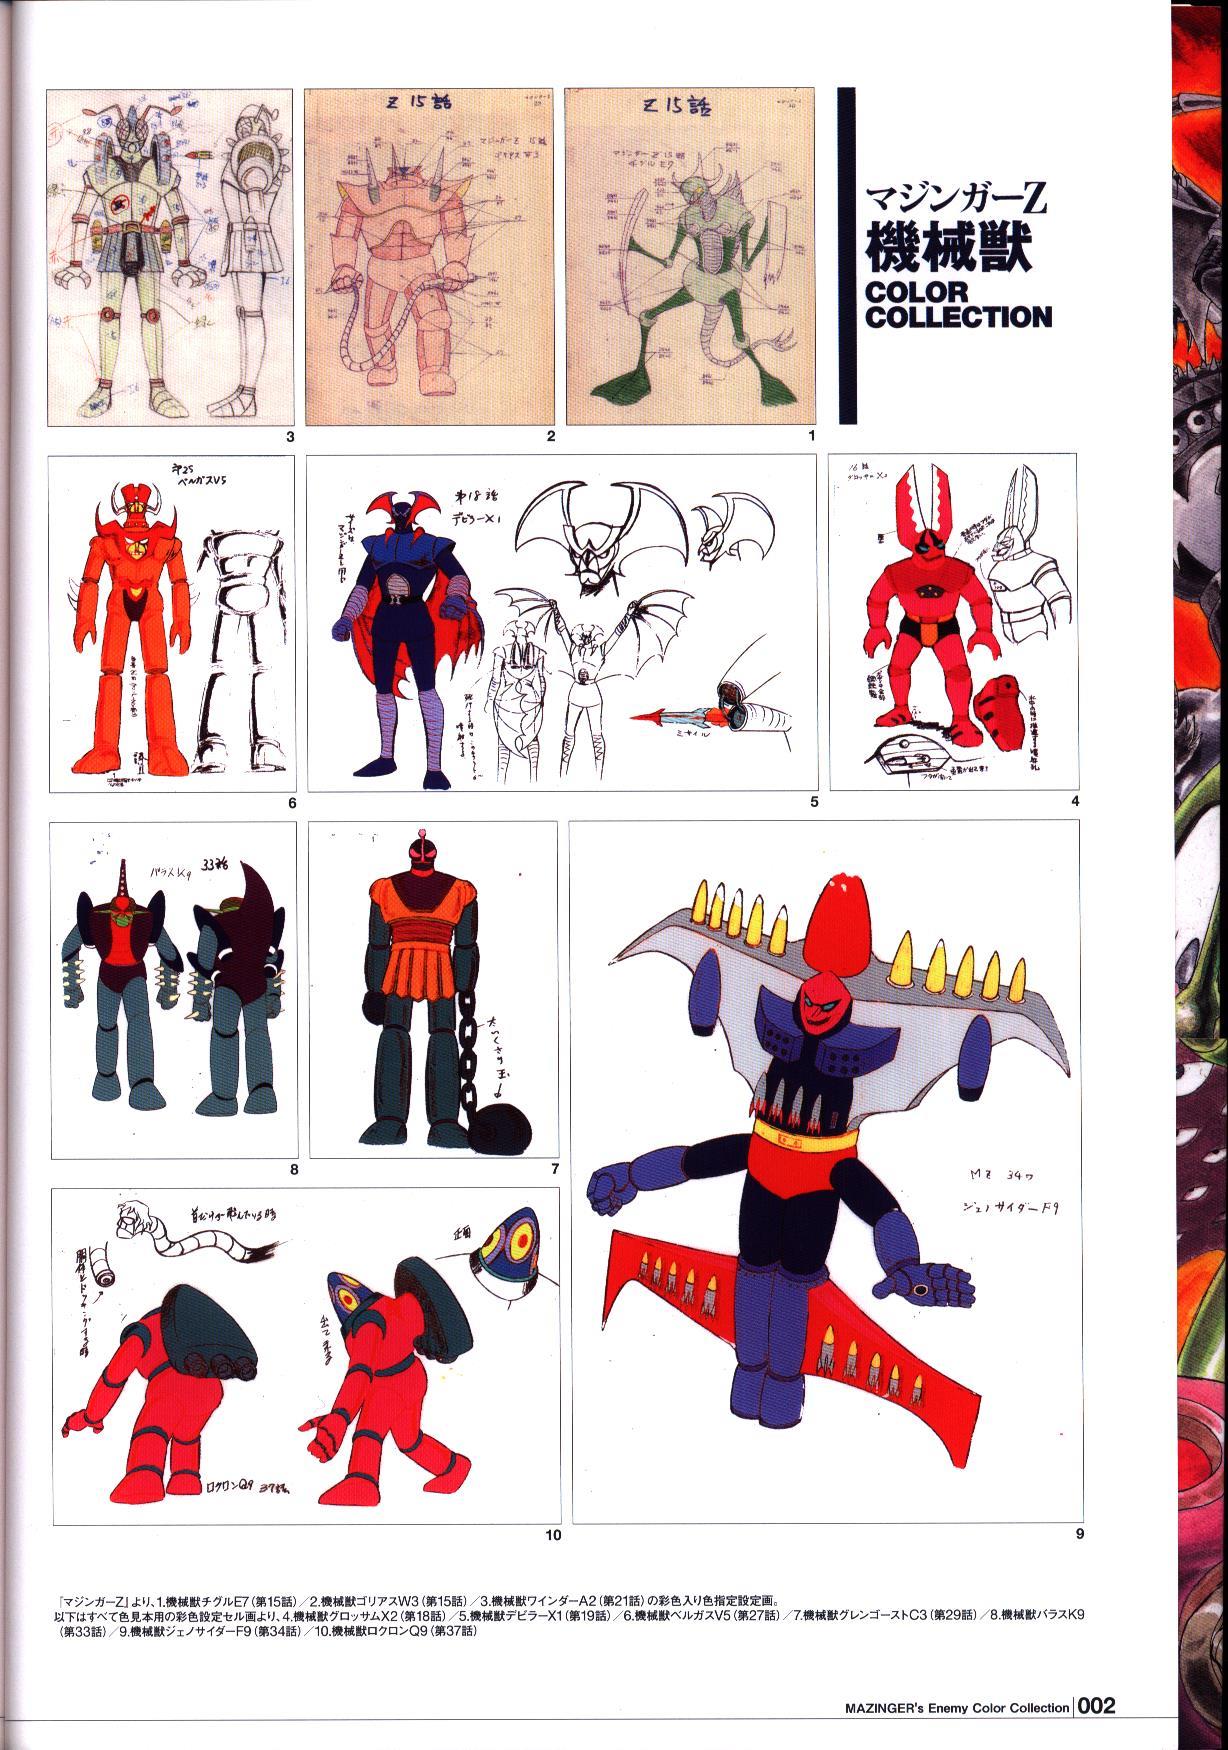 狂機乱武 : マジンガーシリーズ40周年記念公式図録 : 機械獣/妖機械獣